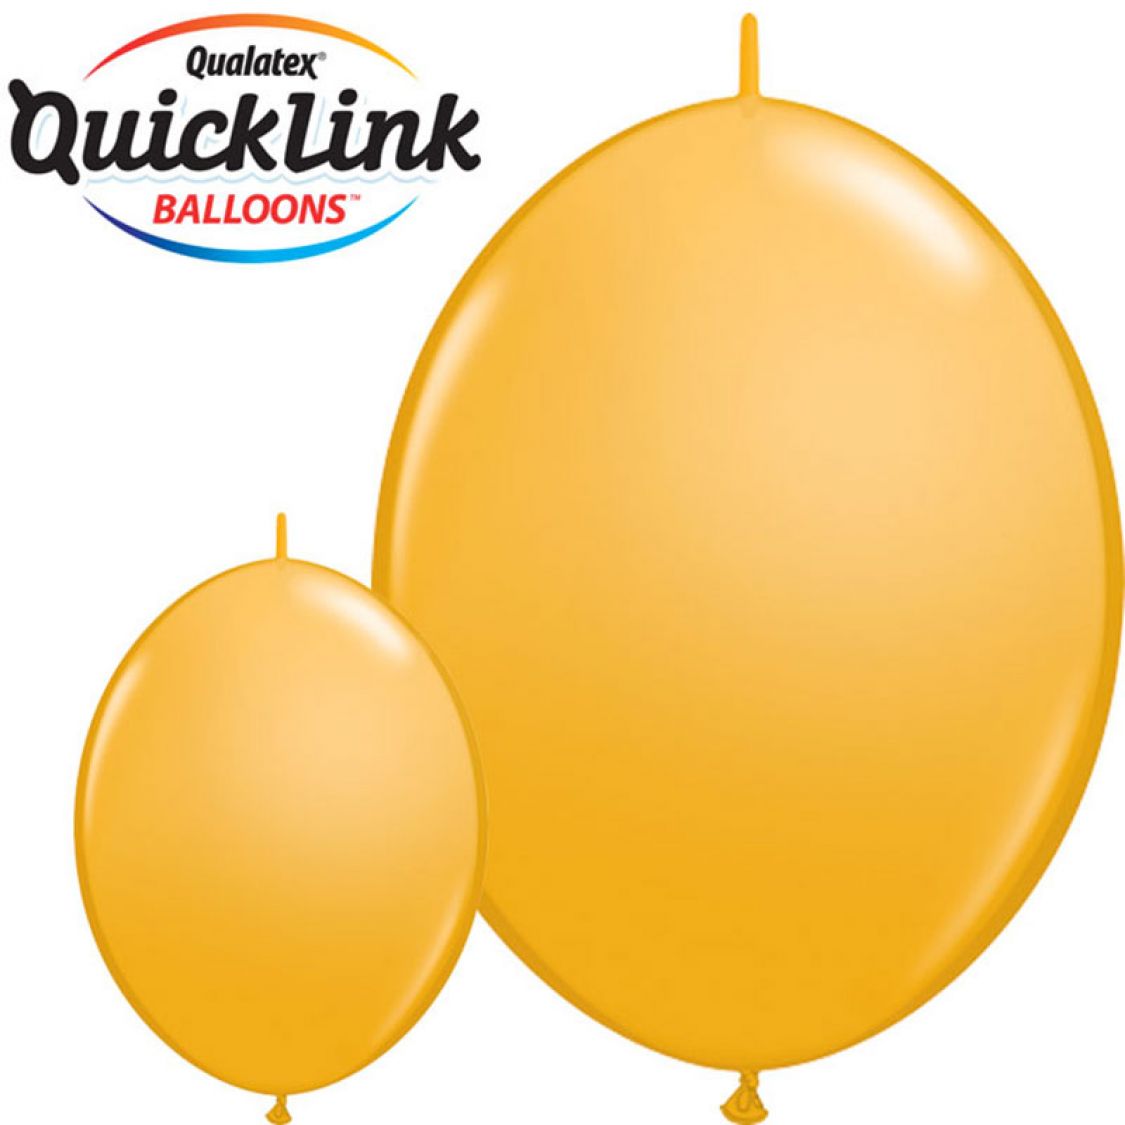 Ballon Quicklink Goldenrod